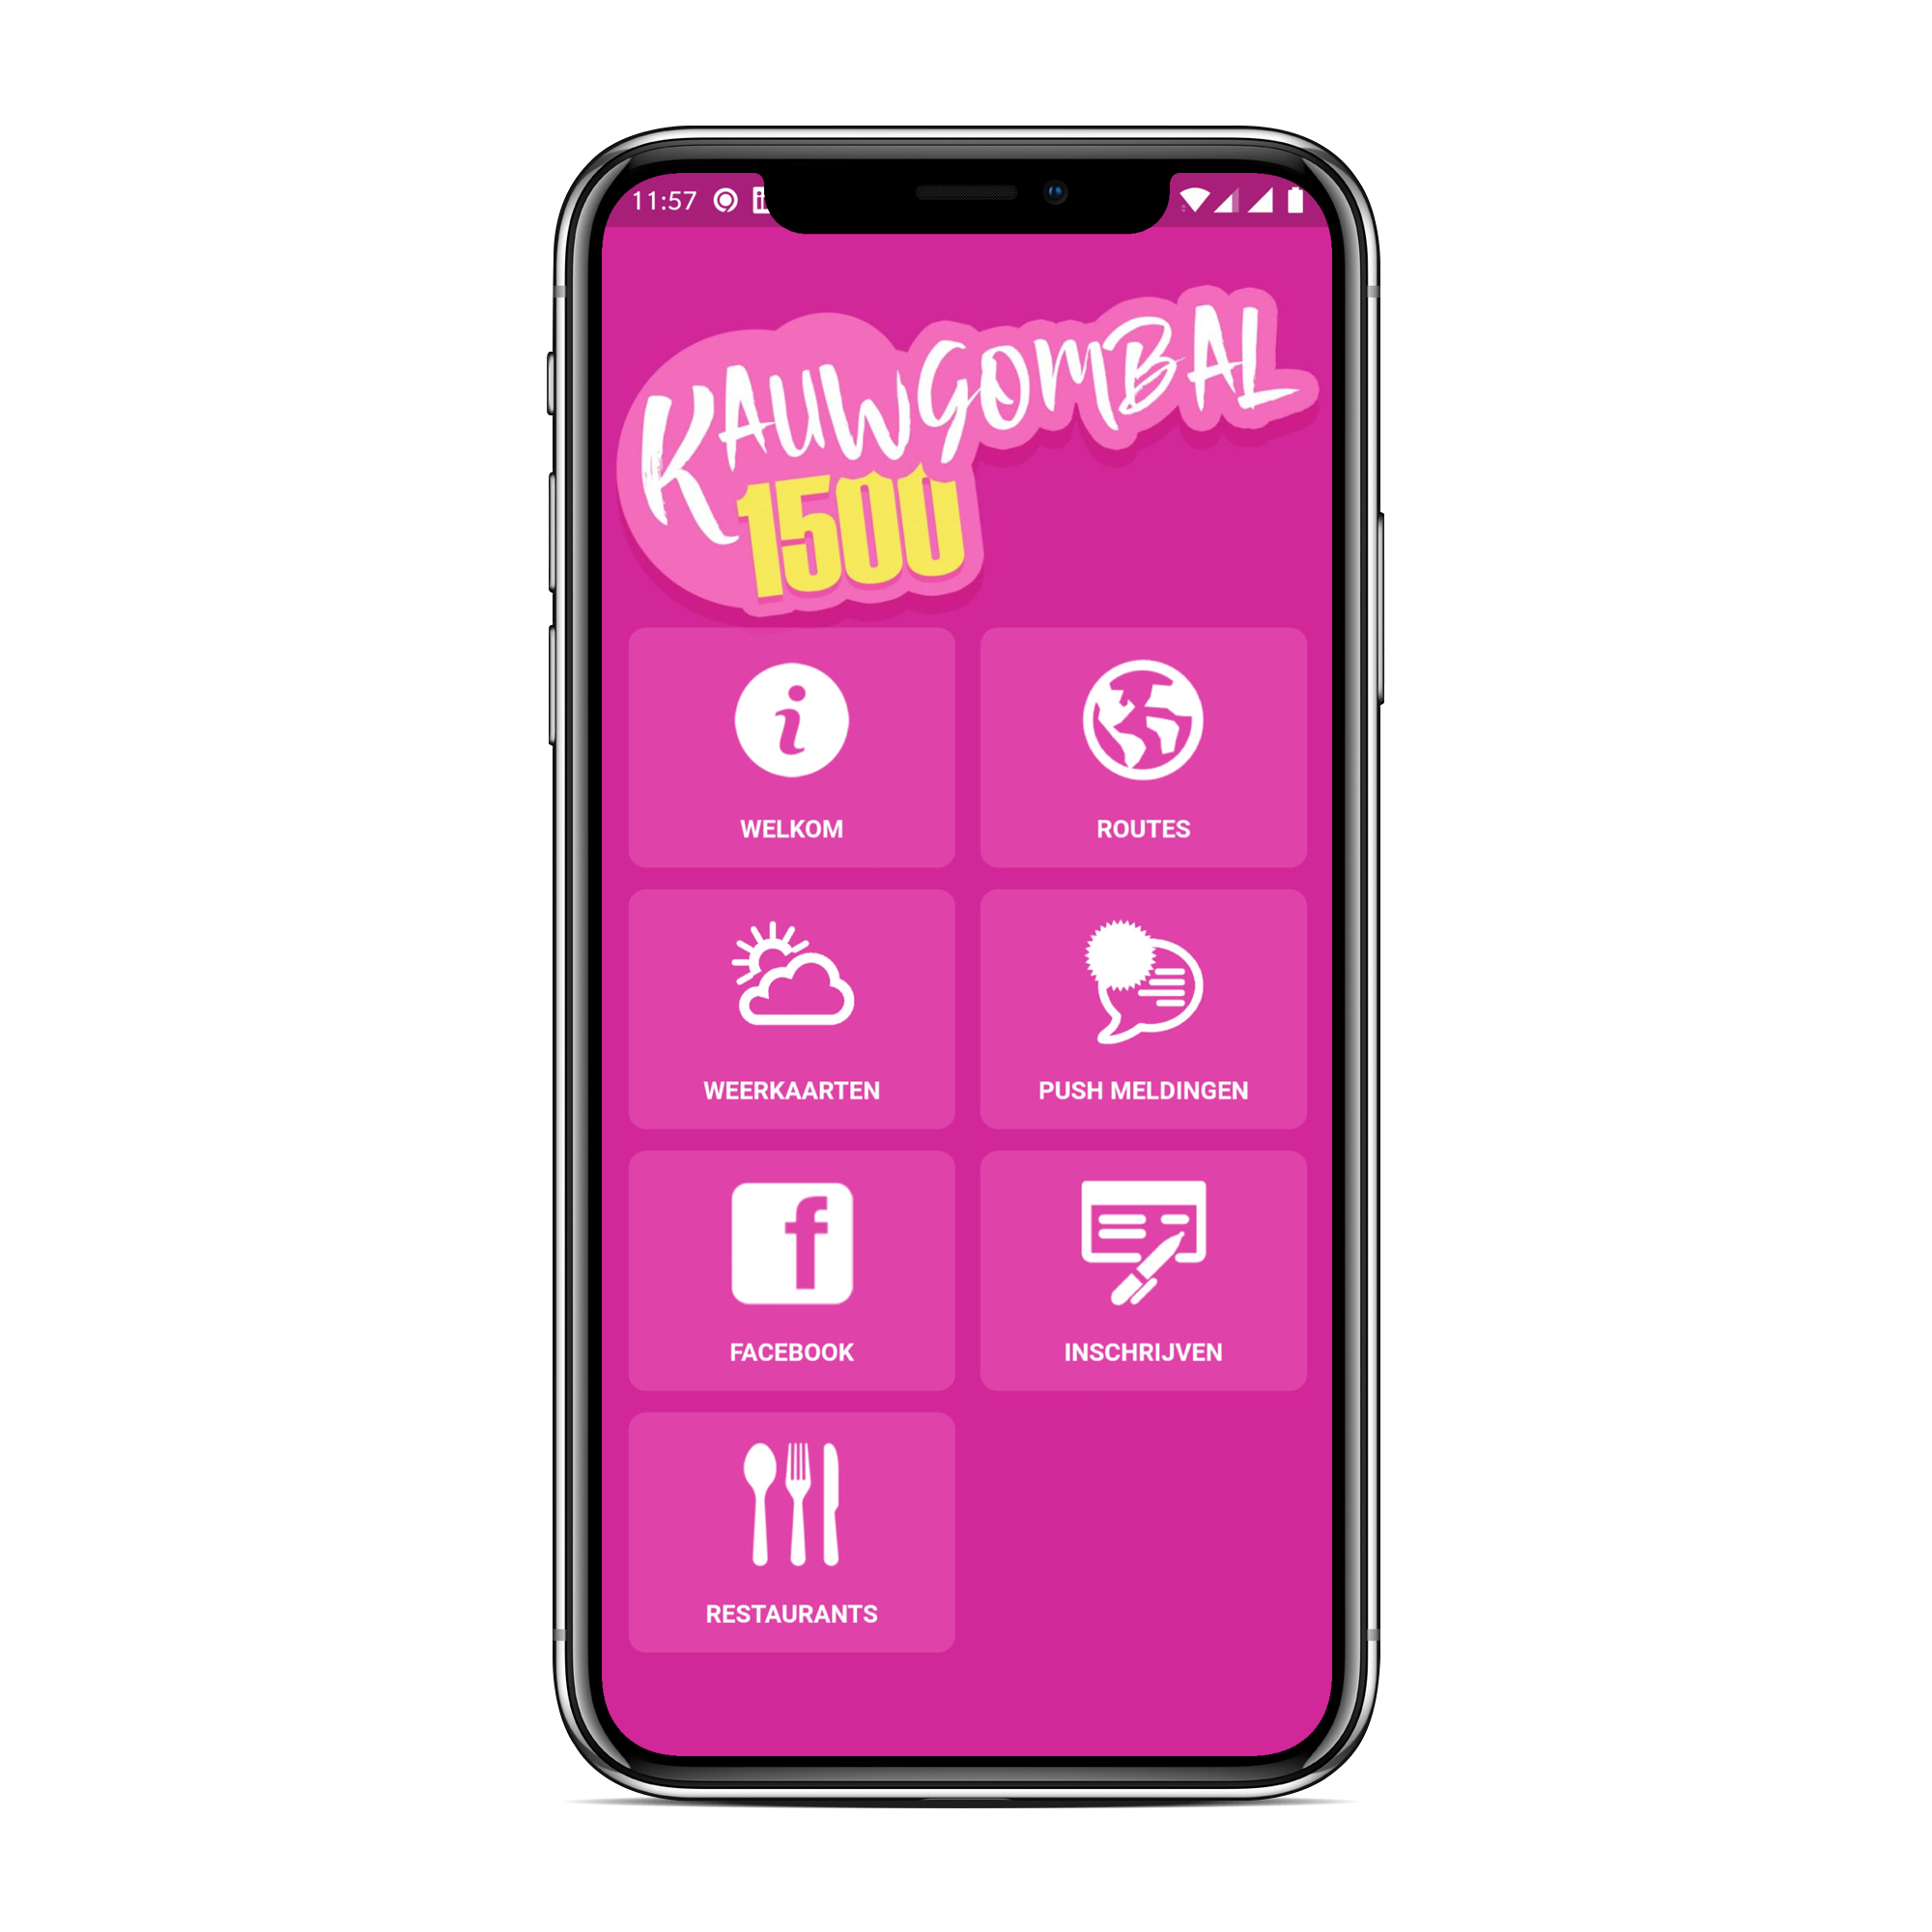 Kauwgombal1500 App